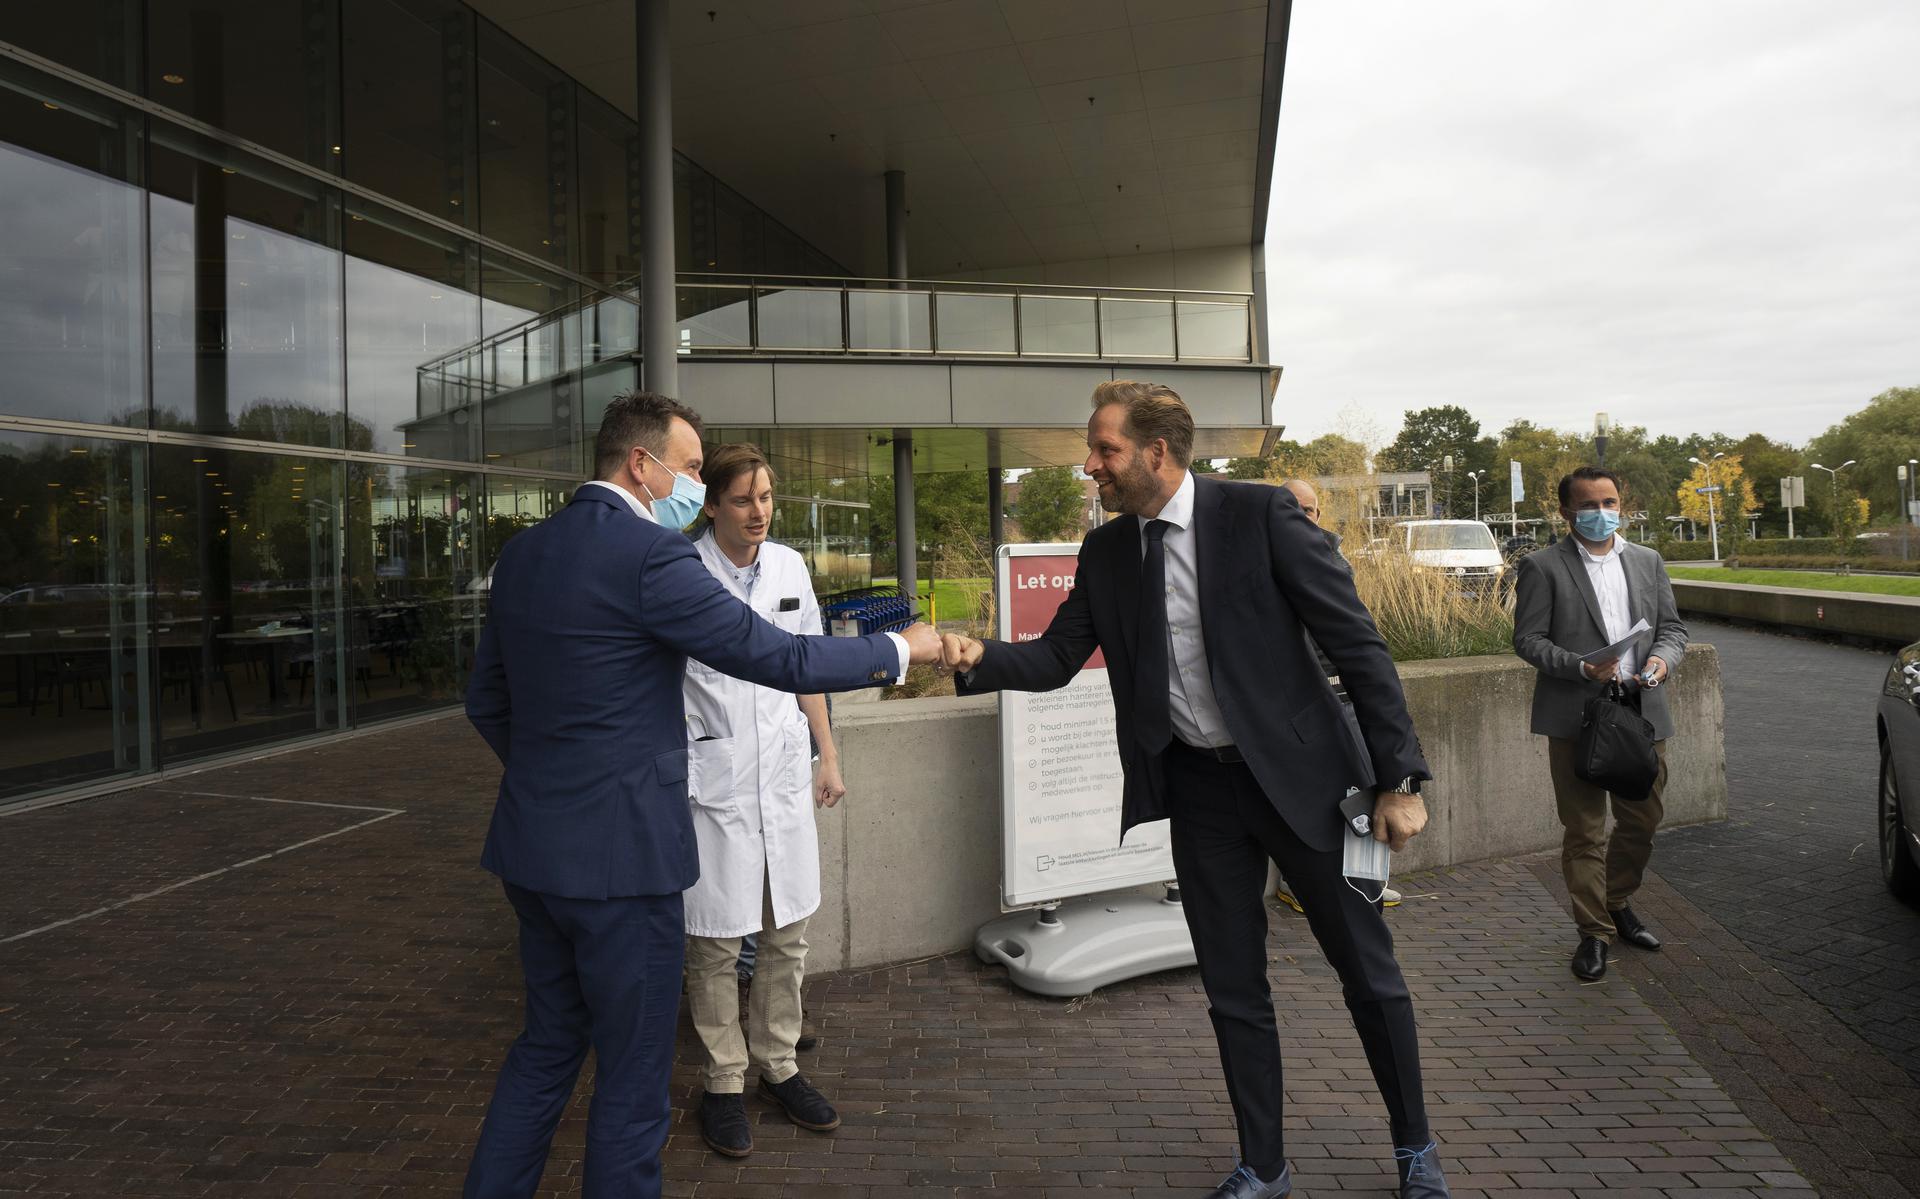 Demissionair minister Hugo de Jonge bezoekt vaccinatiespijtoptanten in Medisch Centrum Leeuwarden.